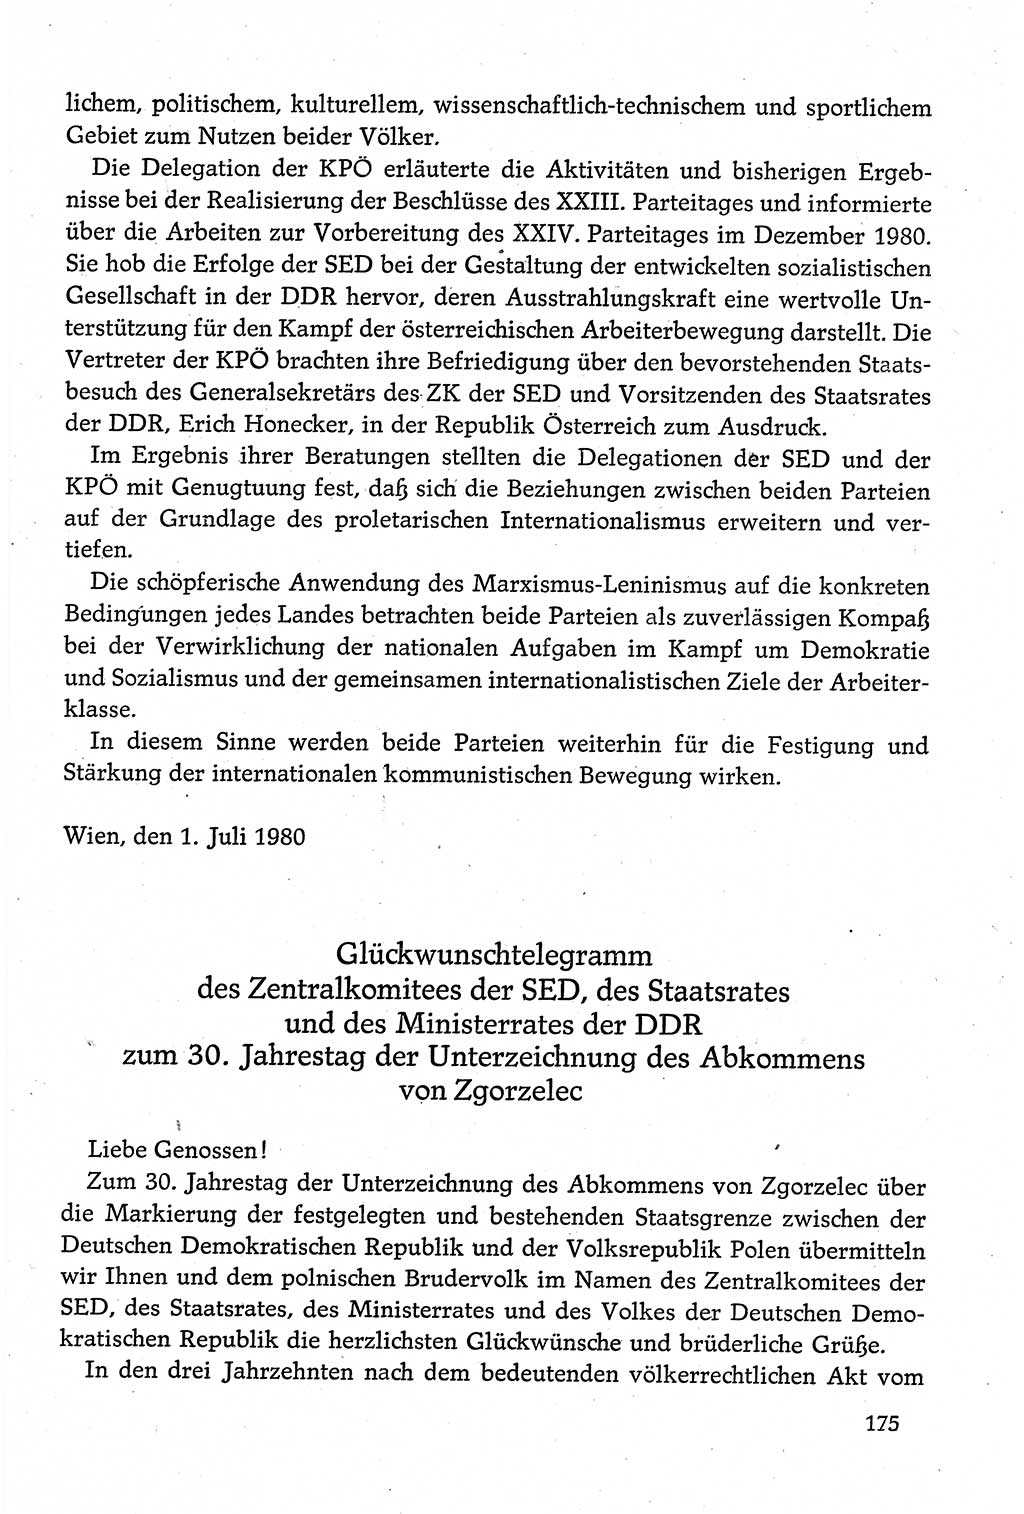 Dokumente der Sozialistischen Einheitspartei Deutschlands (SED) [Deutsche Demokratische Republik (DDR)] 1980-1981, Seite 175 (Dok. SED DDR 1980-1981, S. 175)